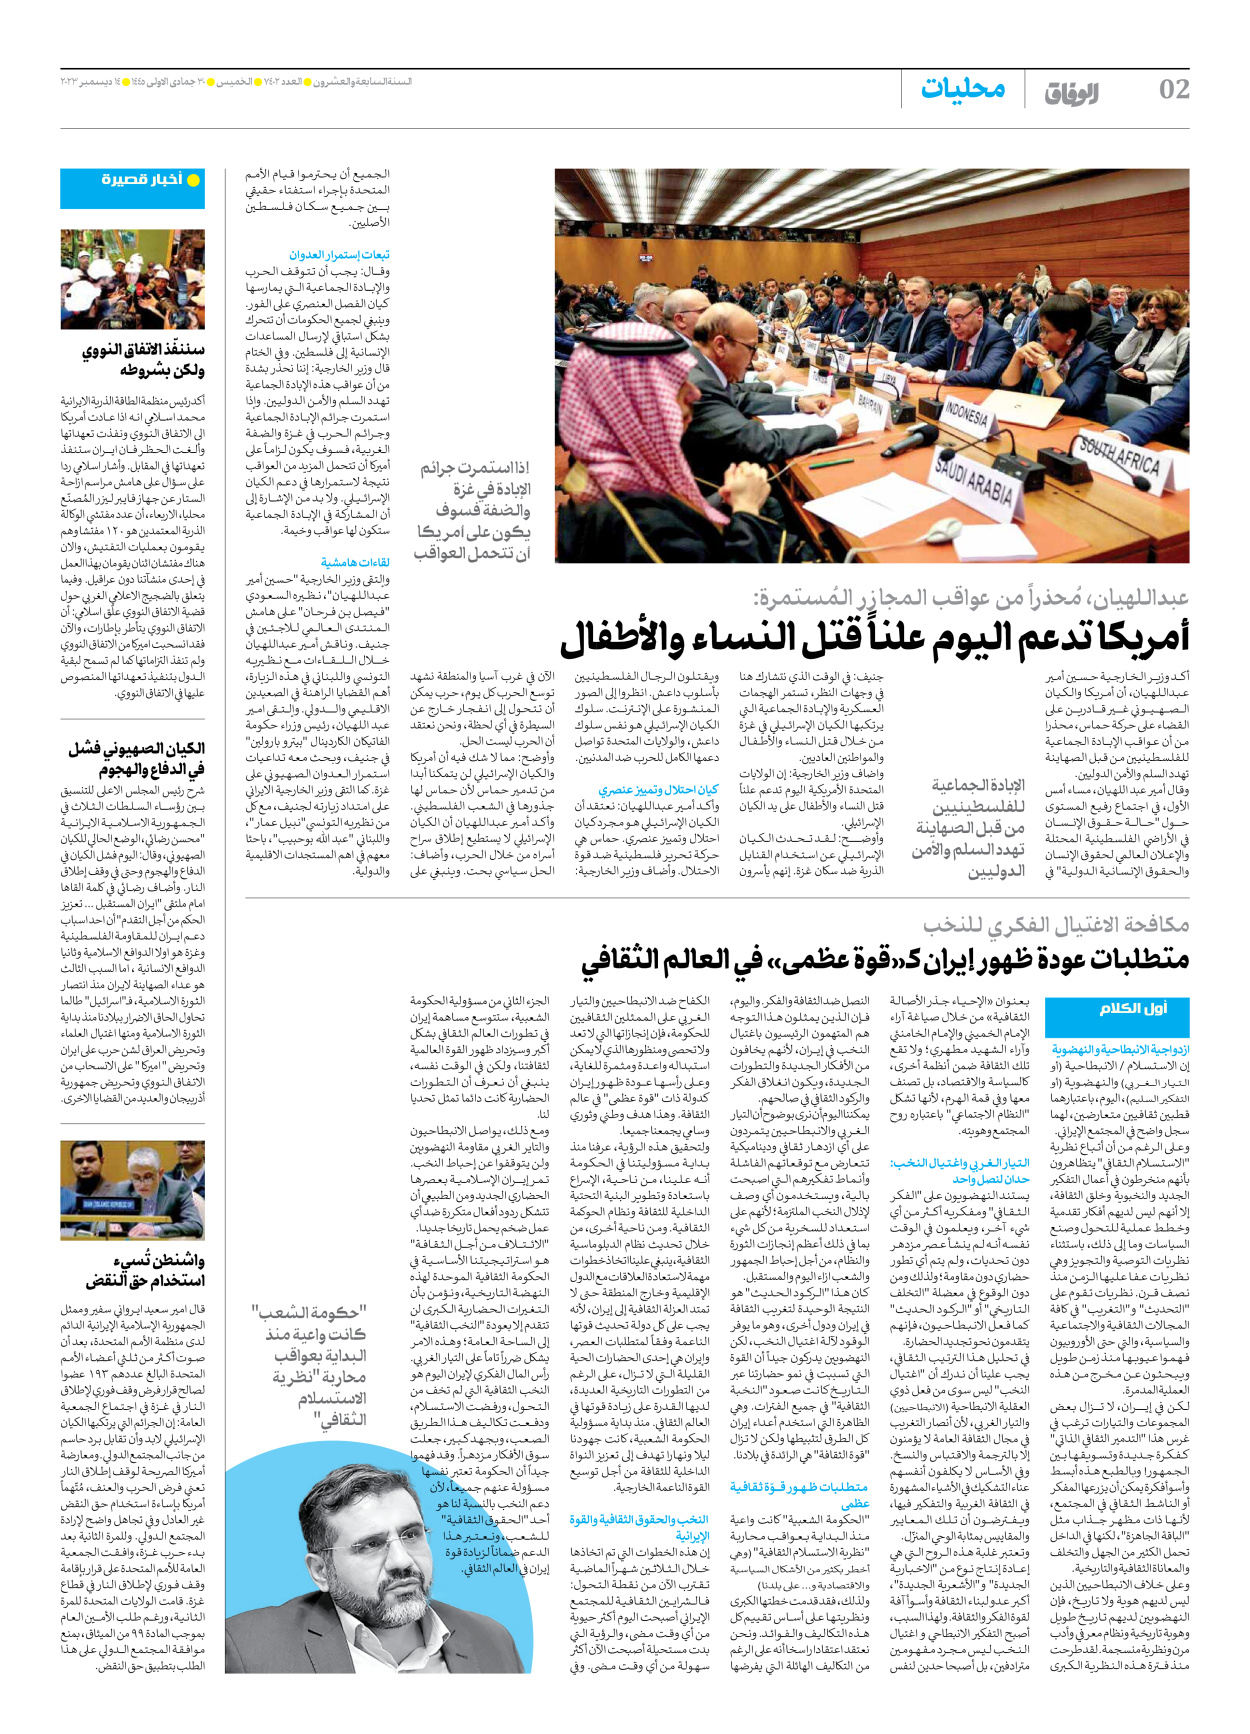 صحیفة ایران الدولیة الوفاق - العدد سبعة آلاف وأربعمائة واثنان - ١٤ ديسمبر ٢٠٢٣ - الصفحة ۲